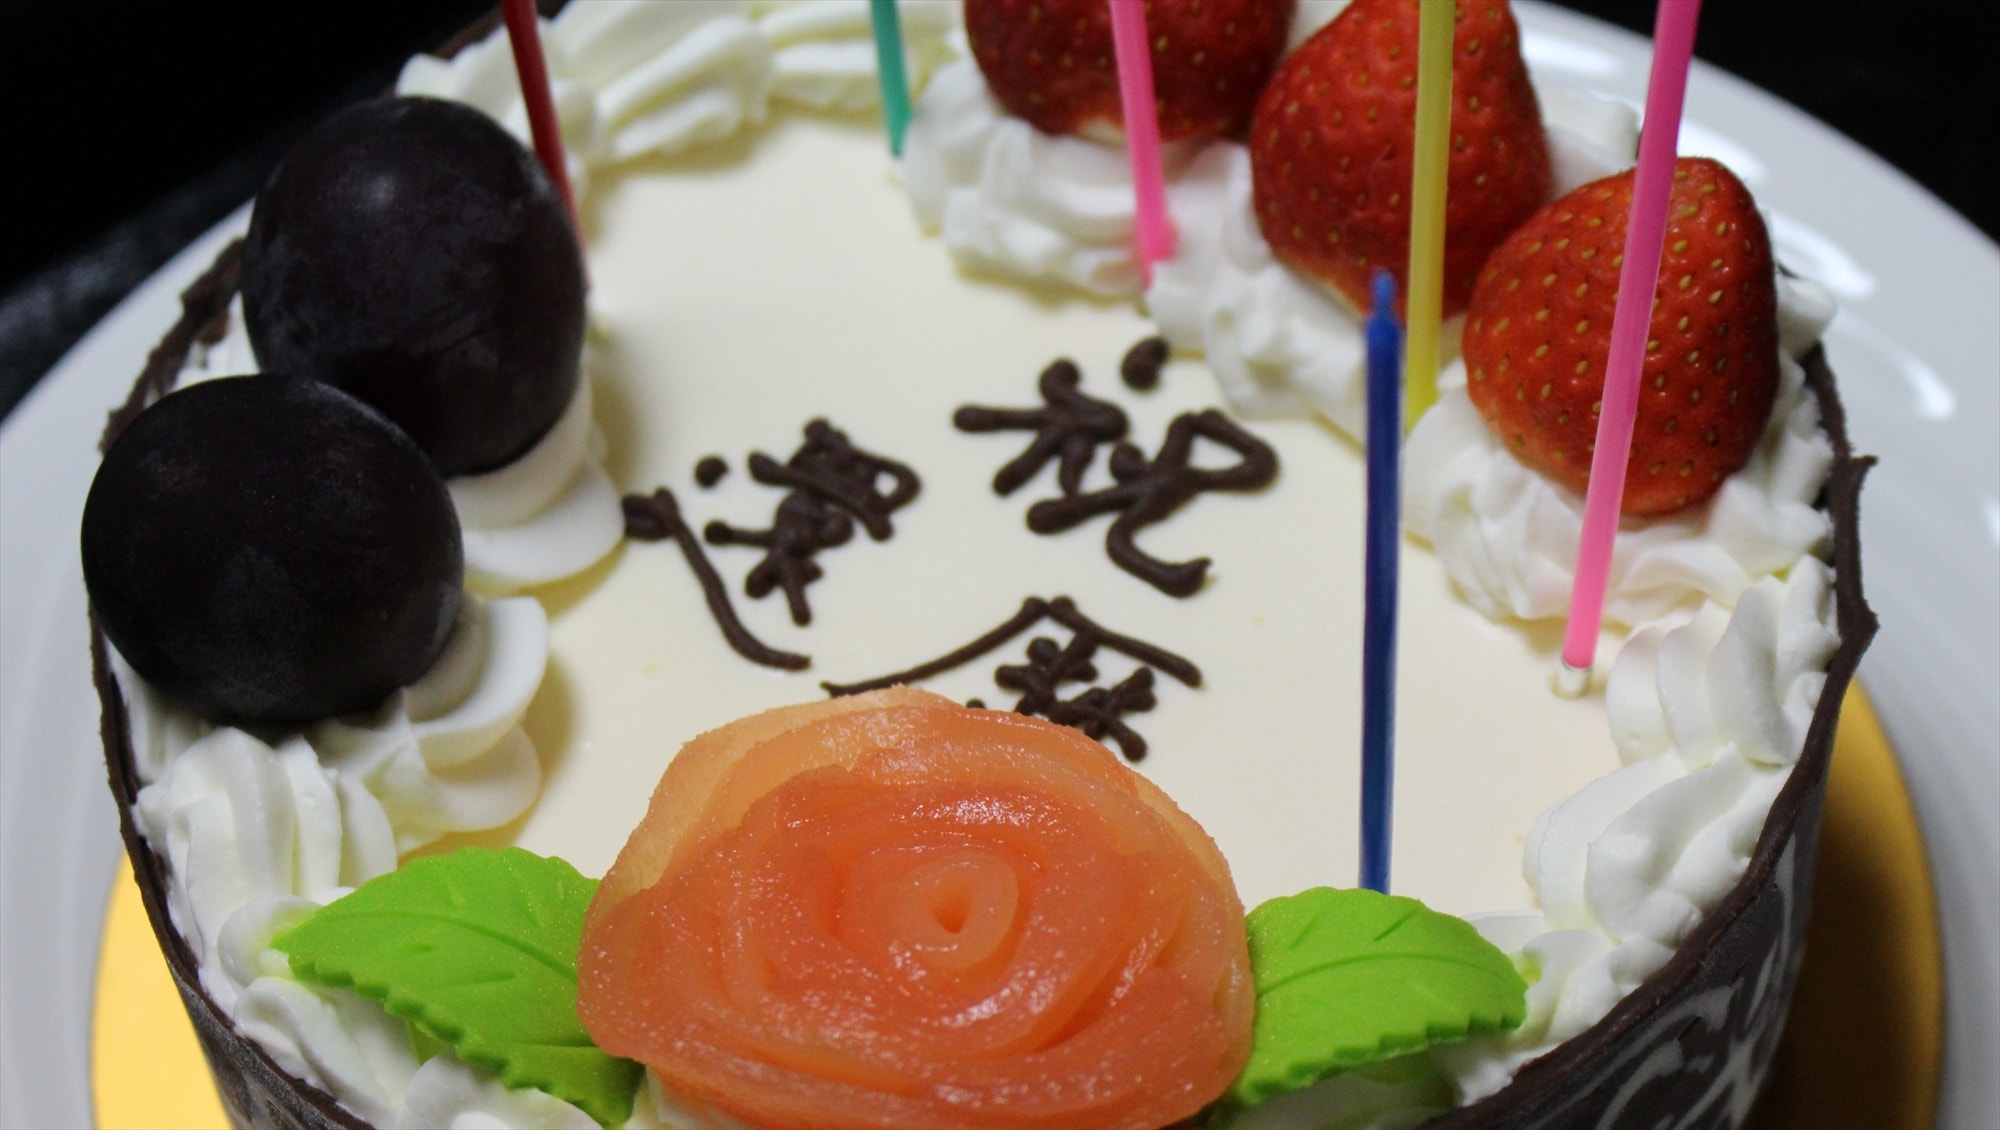 미야지마의 전통 케이크 가게가 만드는 부드러운 케이크입니다. 5호 사이즈로 4000엔~ 좋아하는 메시지도 넣을 수 있습니다!